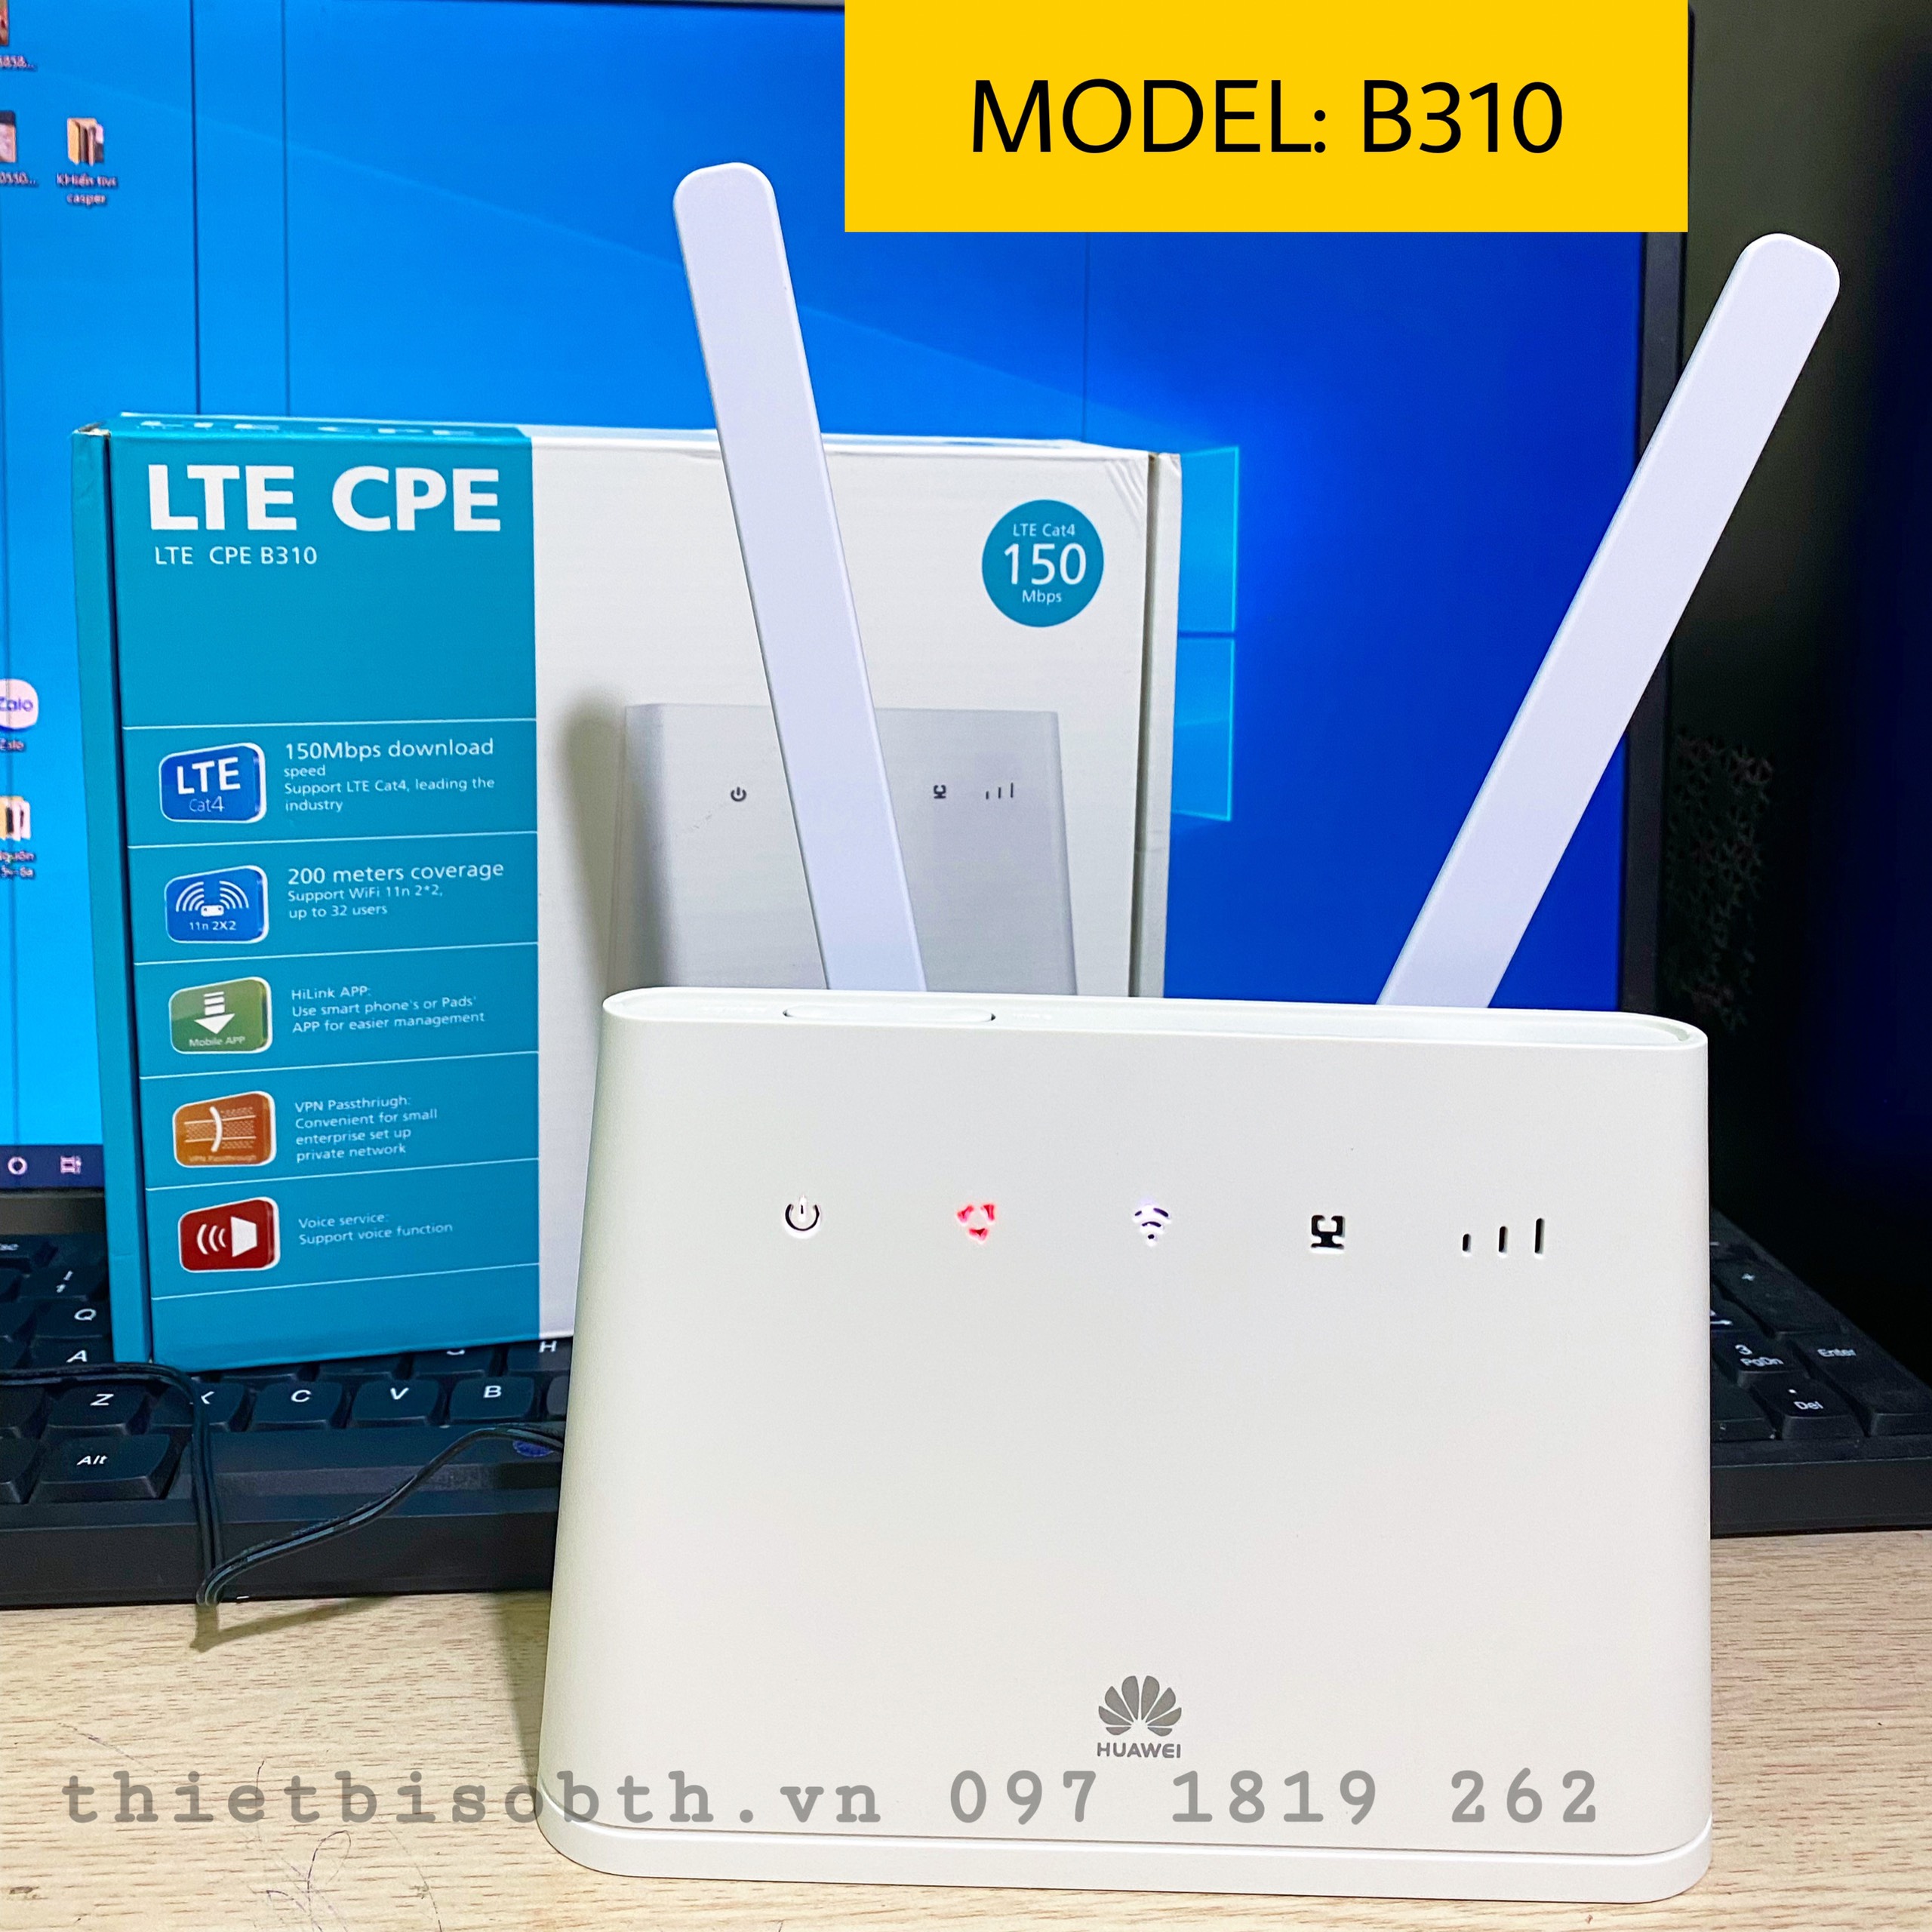 Bộ Phát Wifi 4G Cắm Điện Hua wei B310as-852, 3G/4G Tốc Độ Khủng 150Mbps Hỗ Trợ 32 Máy Kết Nối TẶNG KÈM 2 ANTEN